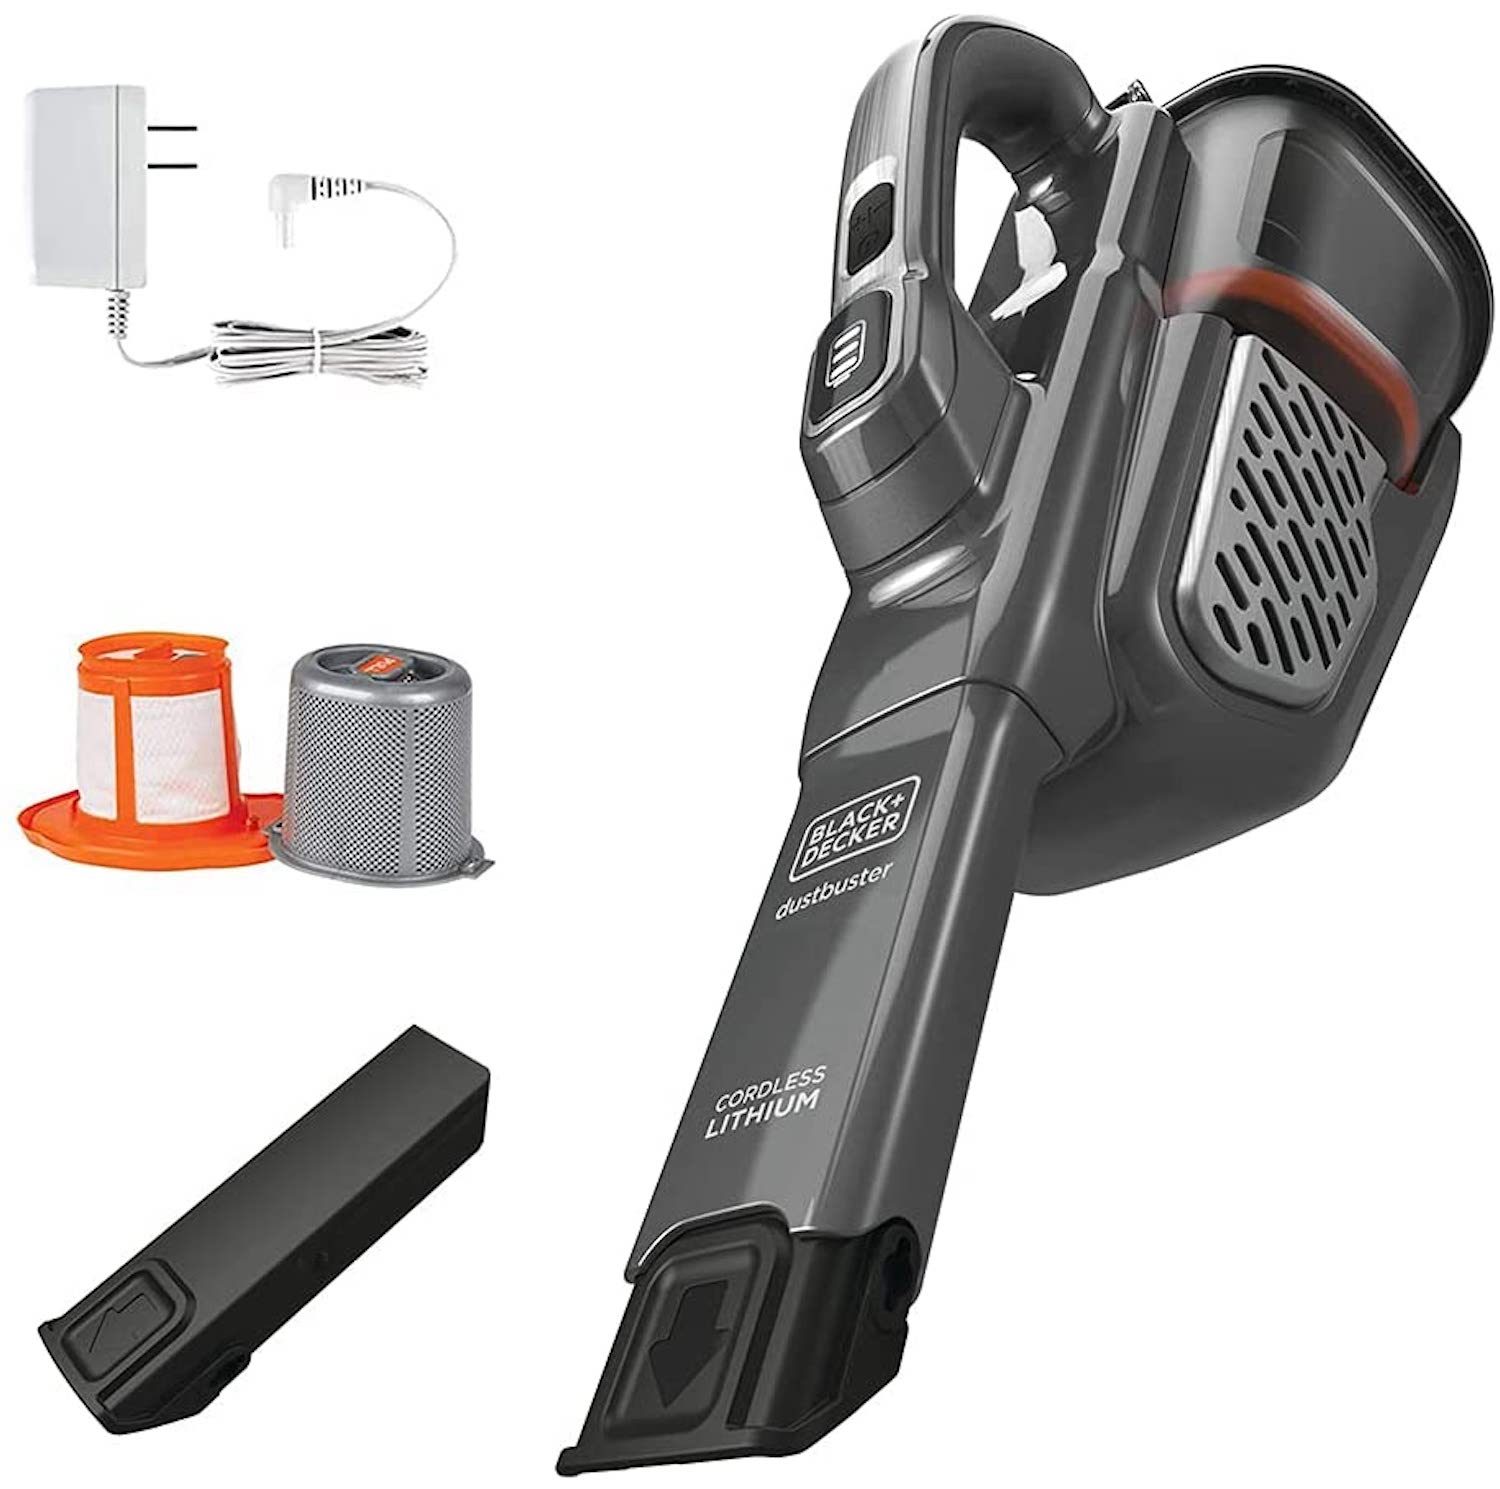 Handheld Vacuum 2Ah, Power White | BLACK+DECKER